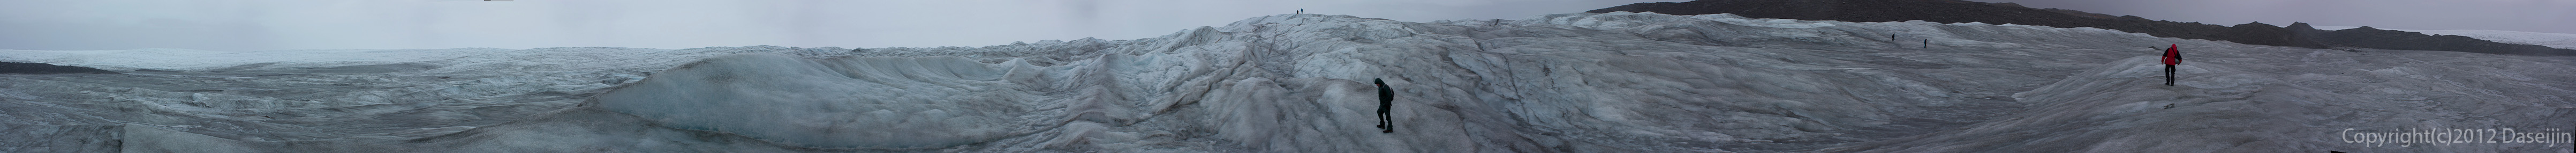 120814アイスランド、グリーンランドの旅・氷床パノラマ